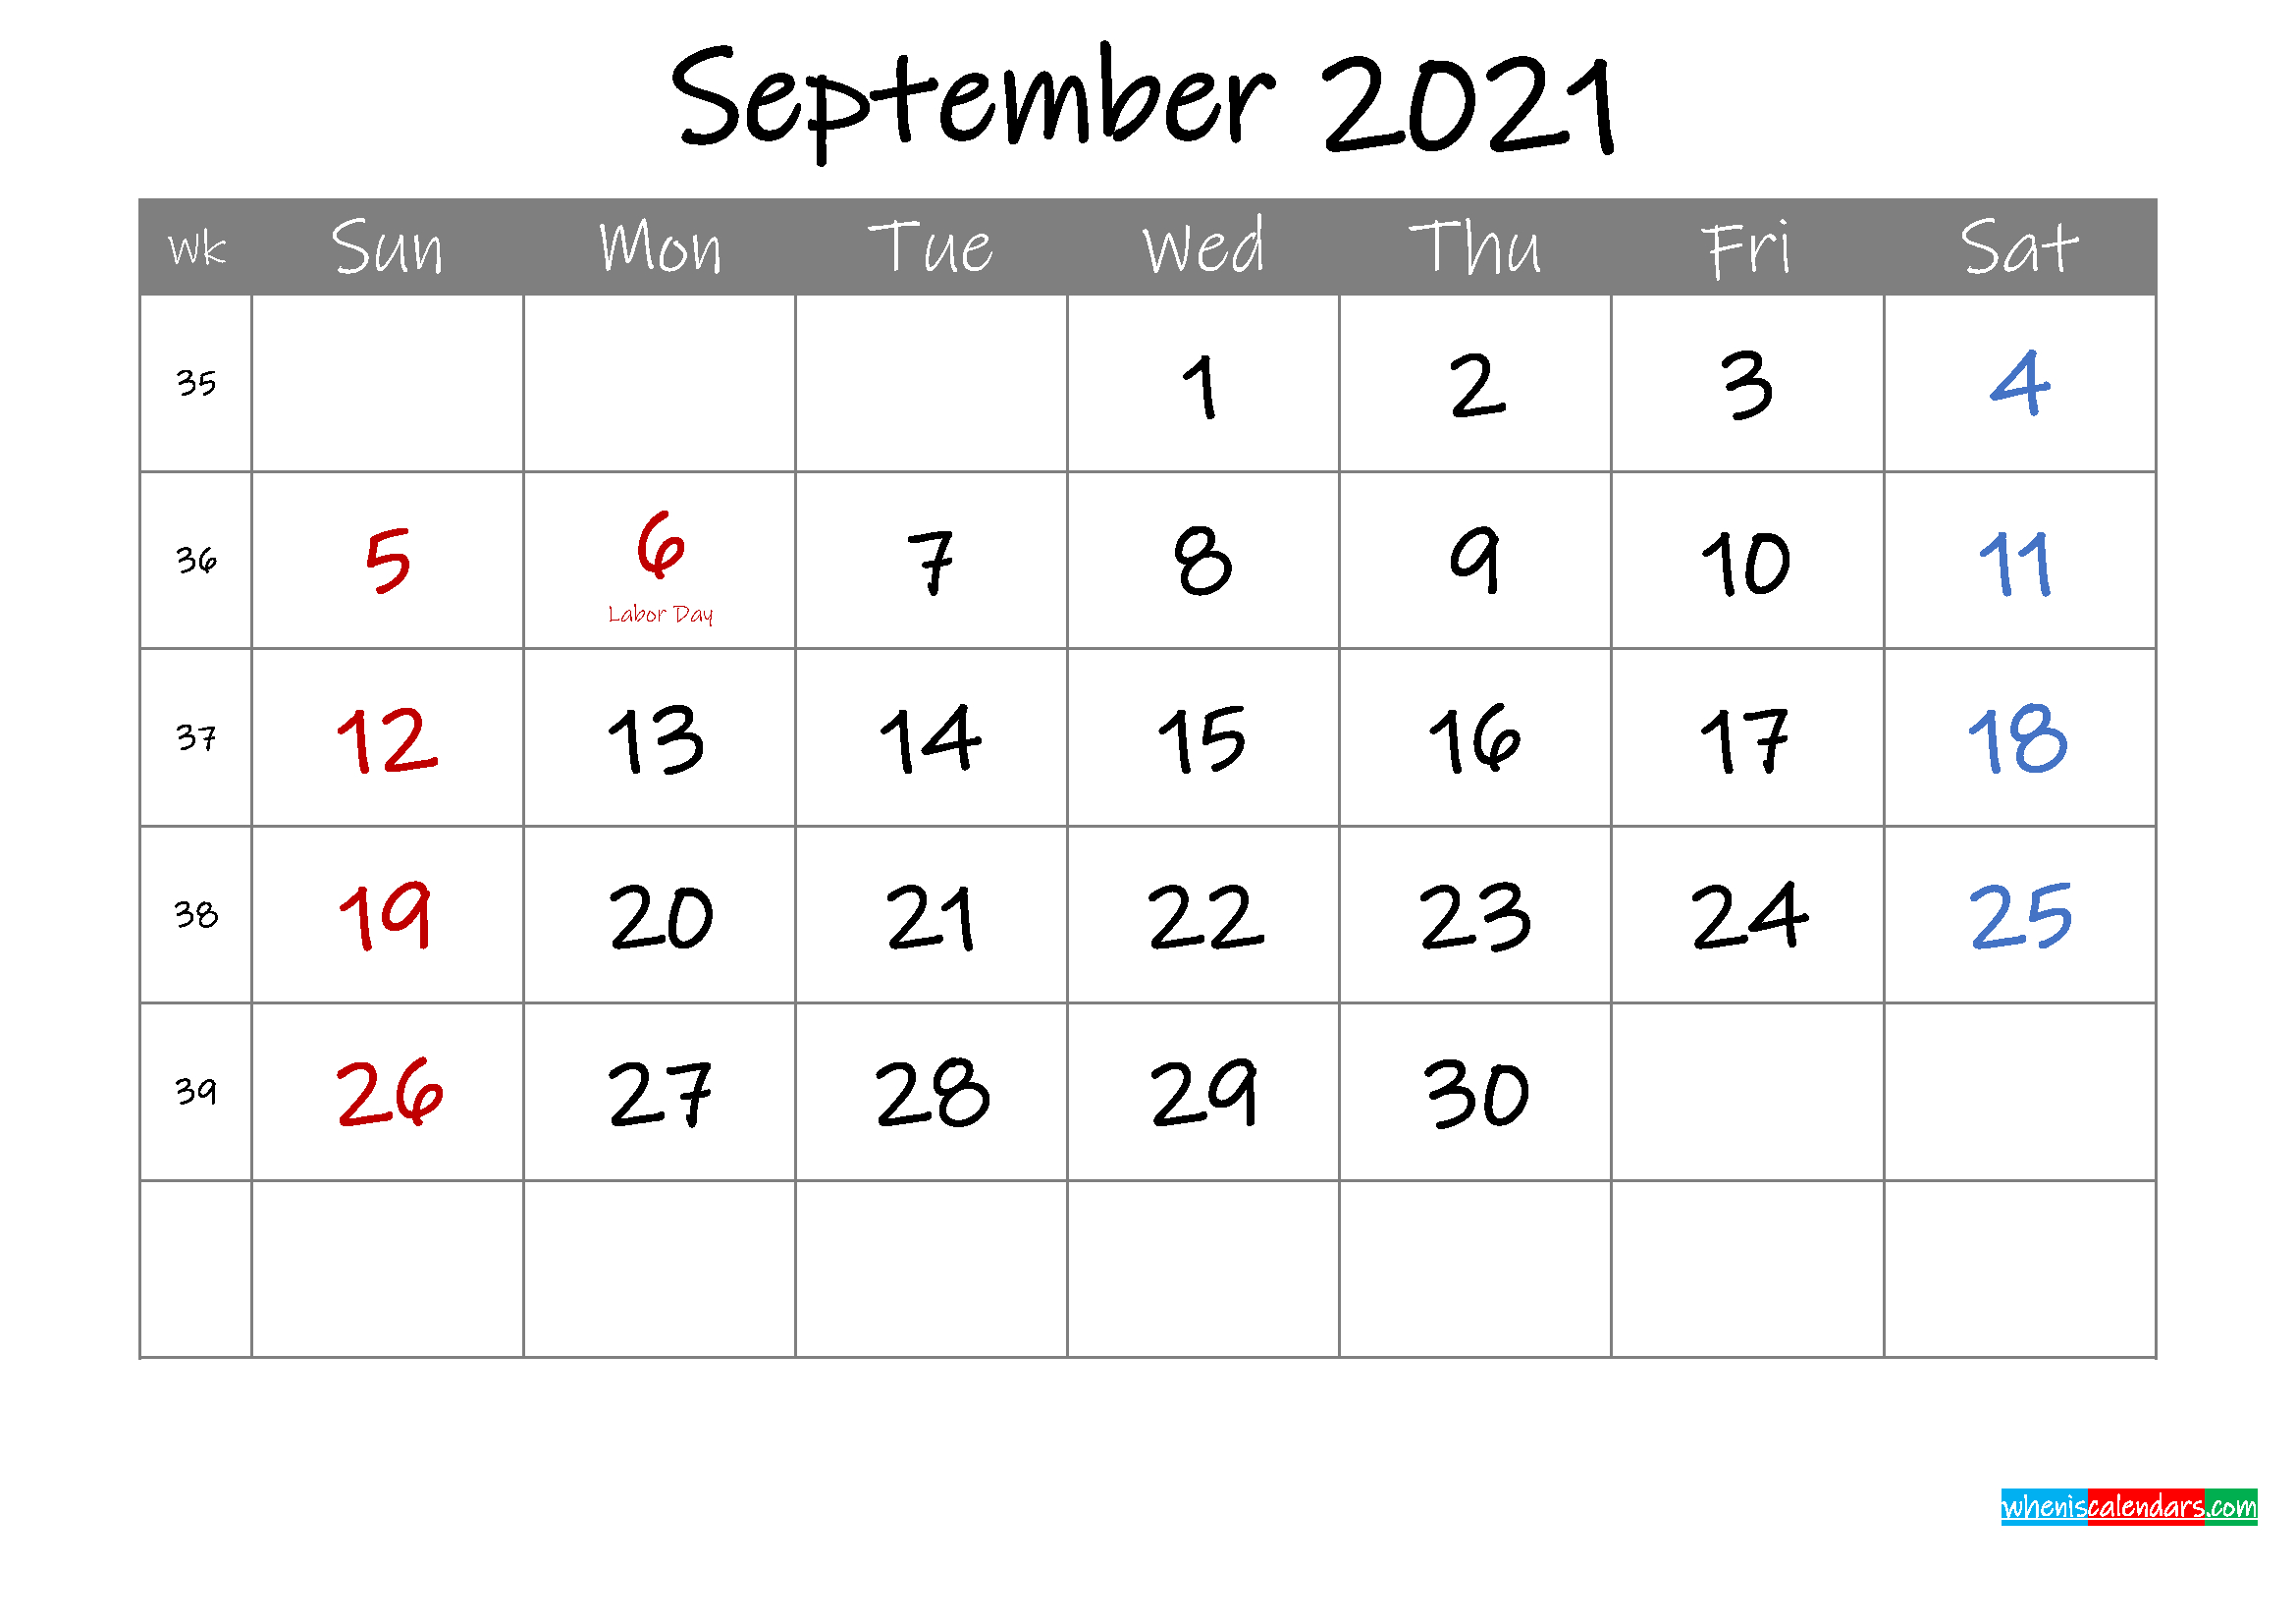 Editable September 2021 Calendar With Holidays - Template-Microsoft Word Editable Calendar 2021